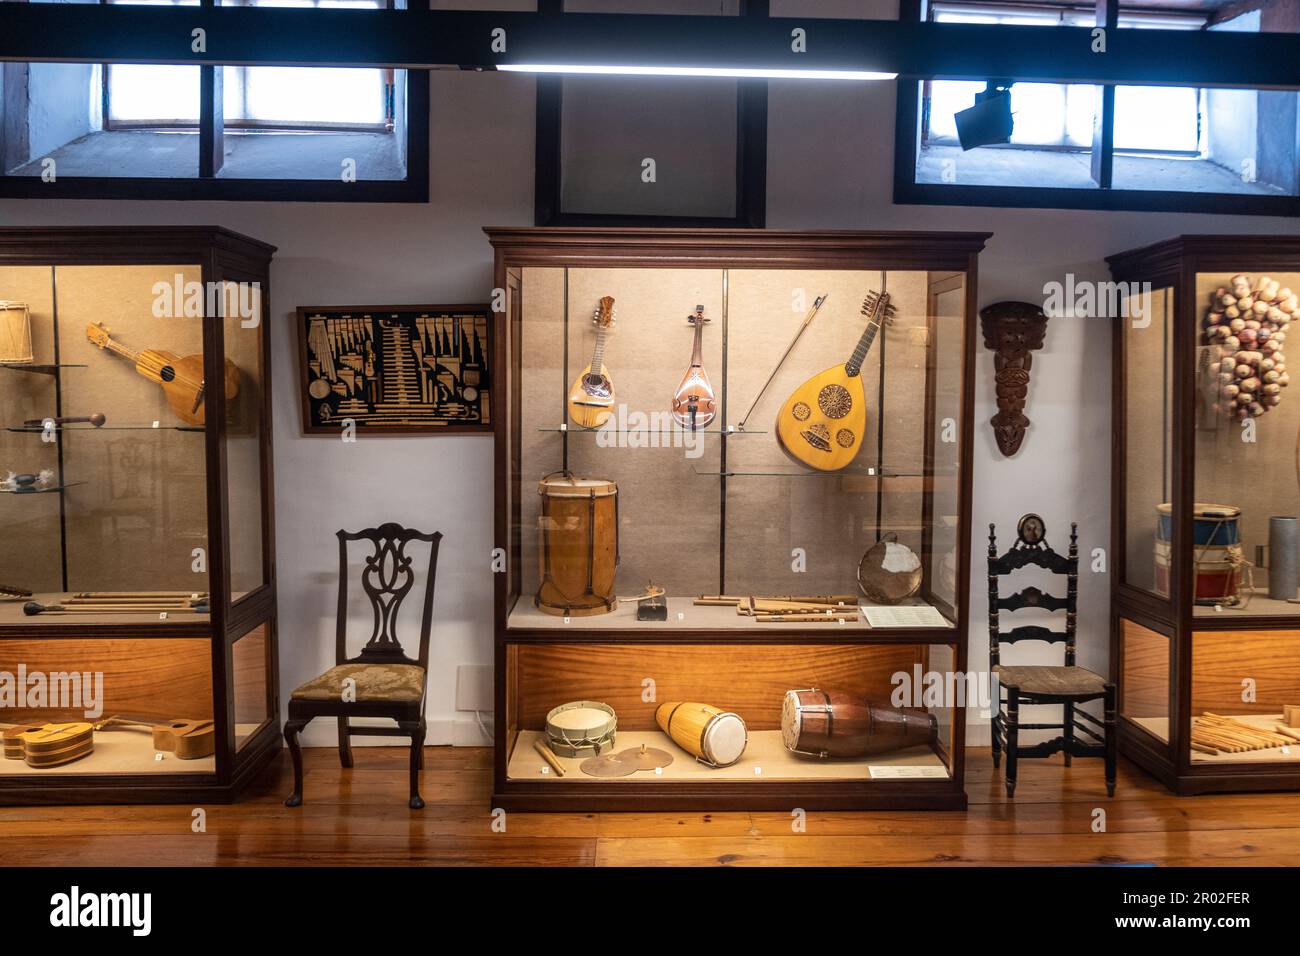 Im Museo de Artesanía Iberoamericana de Teneriffa, La Orotava, Kanarische Inseln, Spanien, werden lateinamerikanische Saiteninstrumente und Schlagzeug ausgestellt Stockfoto